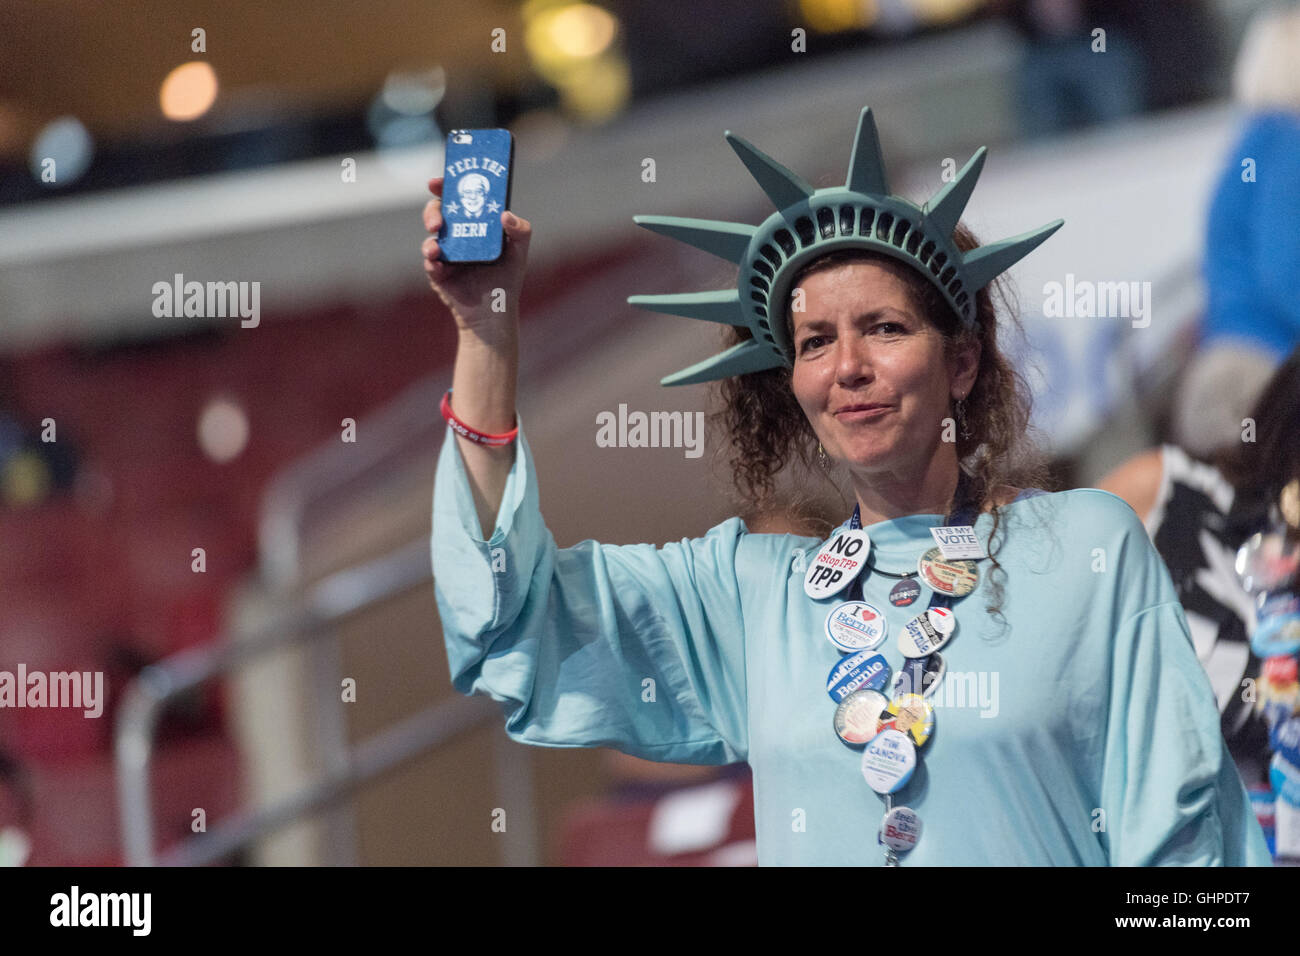 Ein California-Delegat, der eine Statue der Freiheit Kostüm tragen, am dritten Tag von der Democratic National Convention im Wells Fargo Center 27. Juli 2016 in Philadelphia, Pennsylvania. Stockfoto